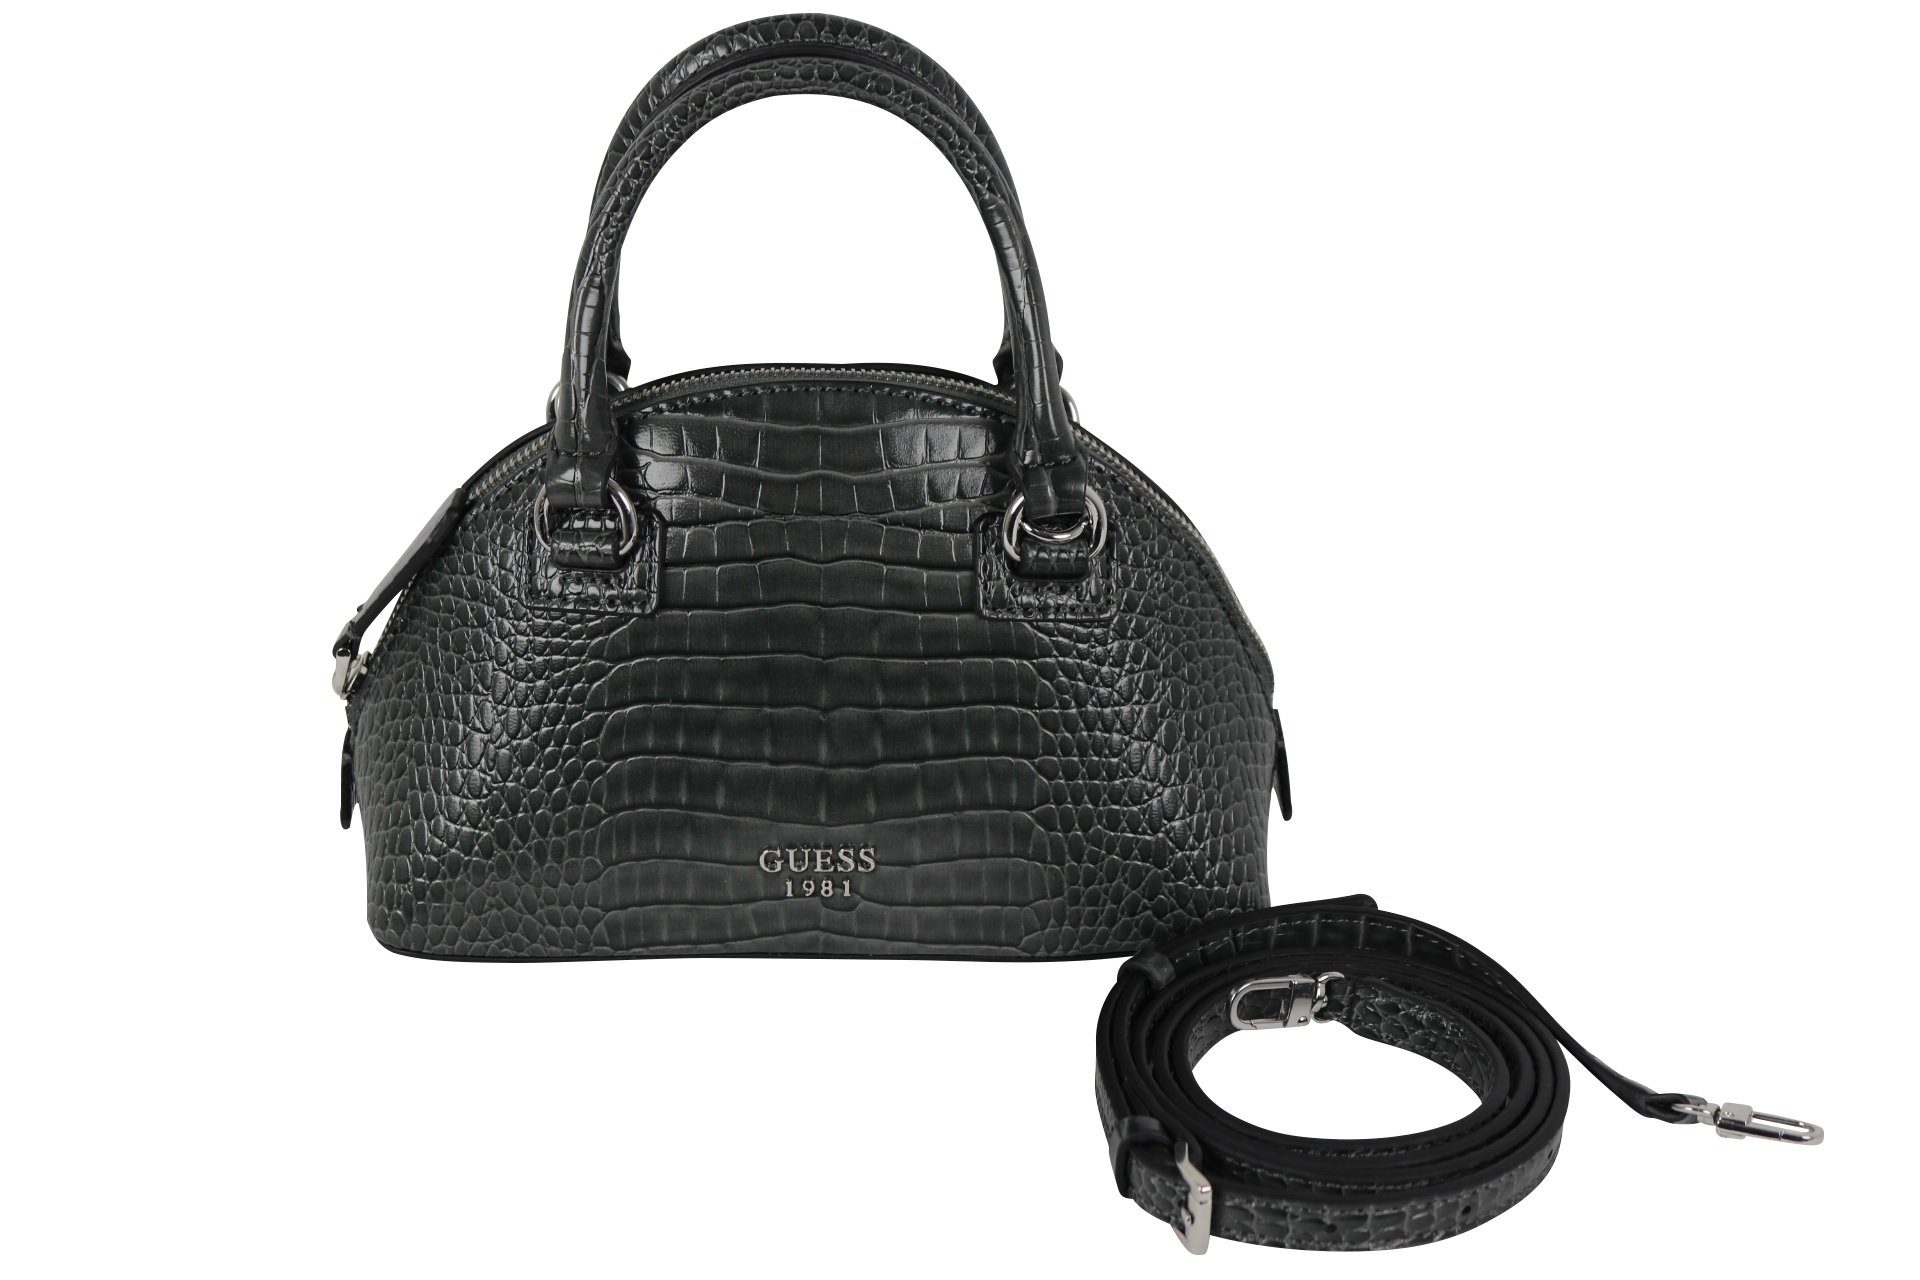 Guess Handtasche »Tasche SHILA mini CY7763760 klein, Umhängegurt,  Reptiloptik« online kaufen | OTTO